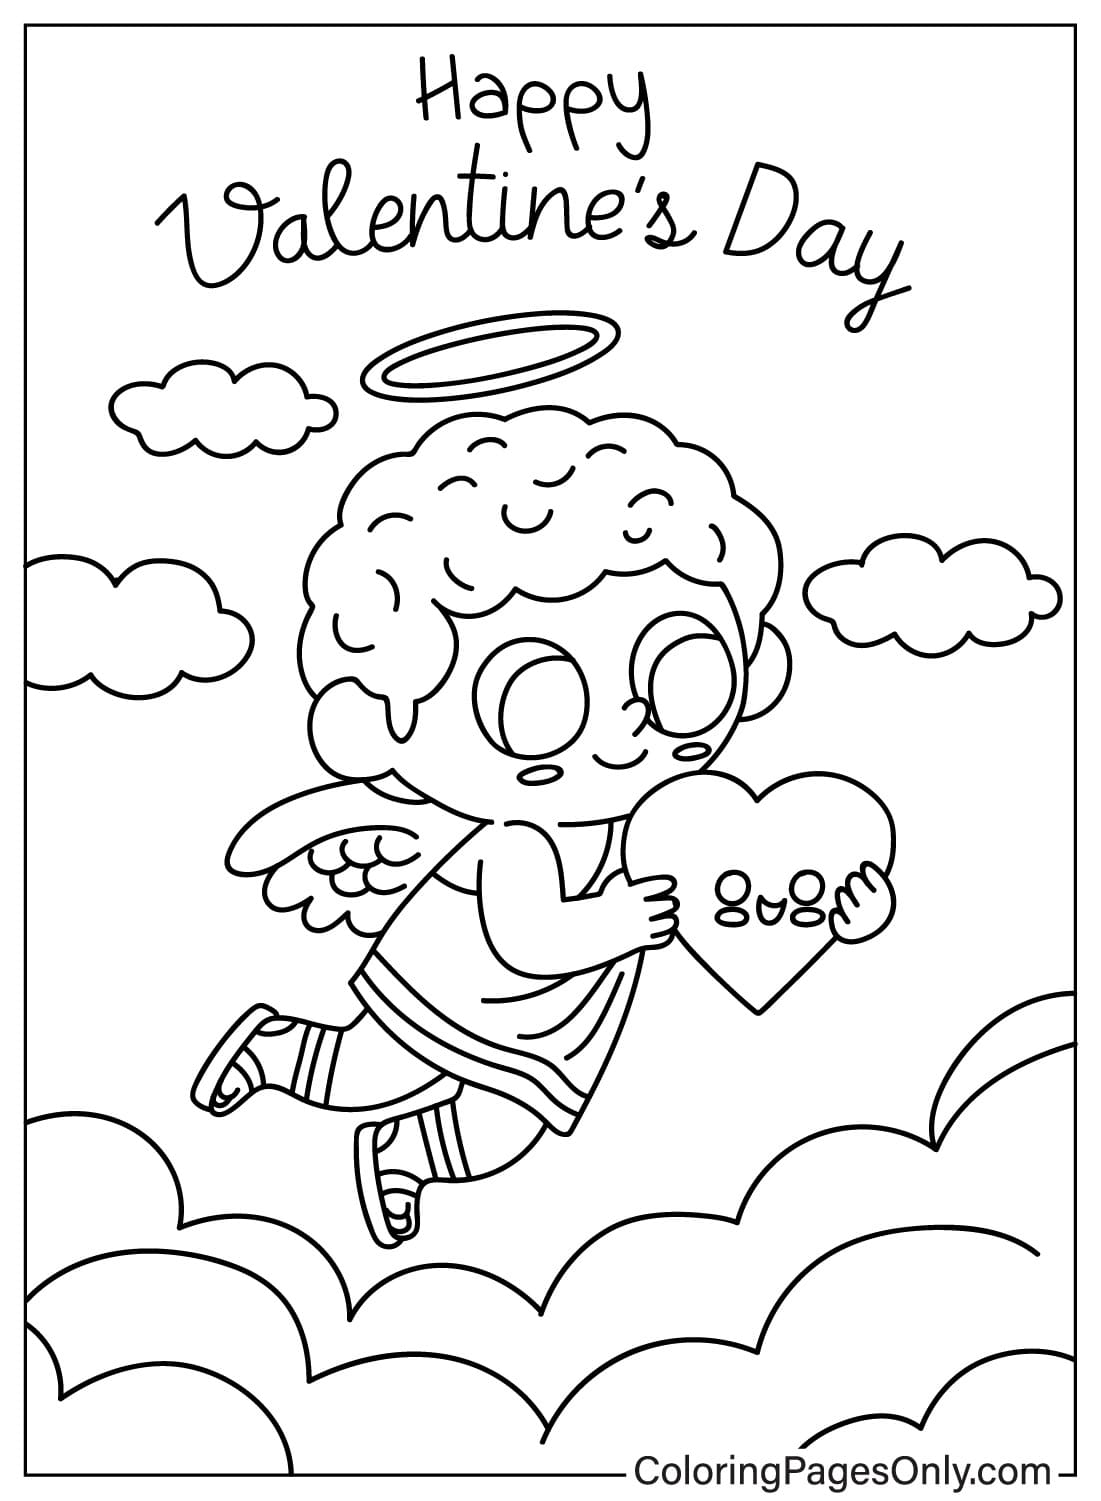 Раскраска Купидон ко Дню святого Валентина бесплатно от Дня святого Валентина